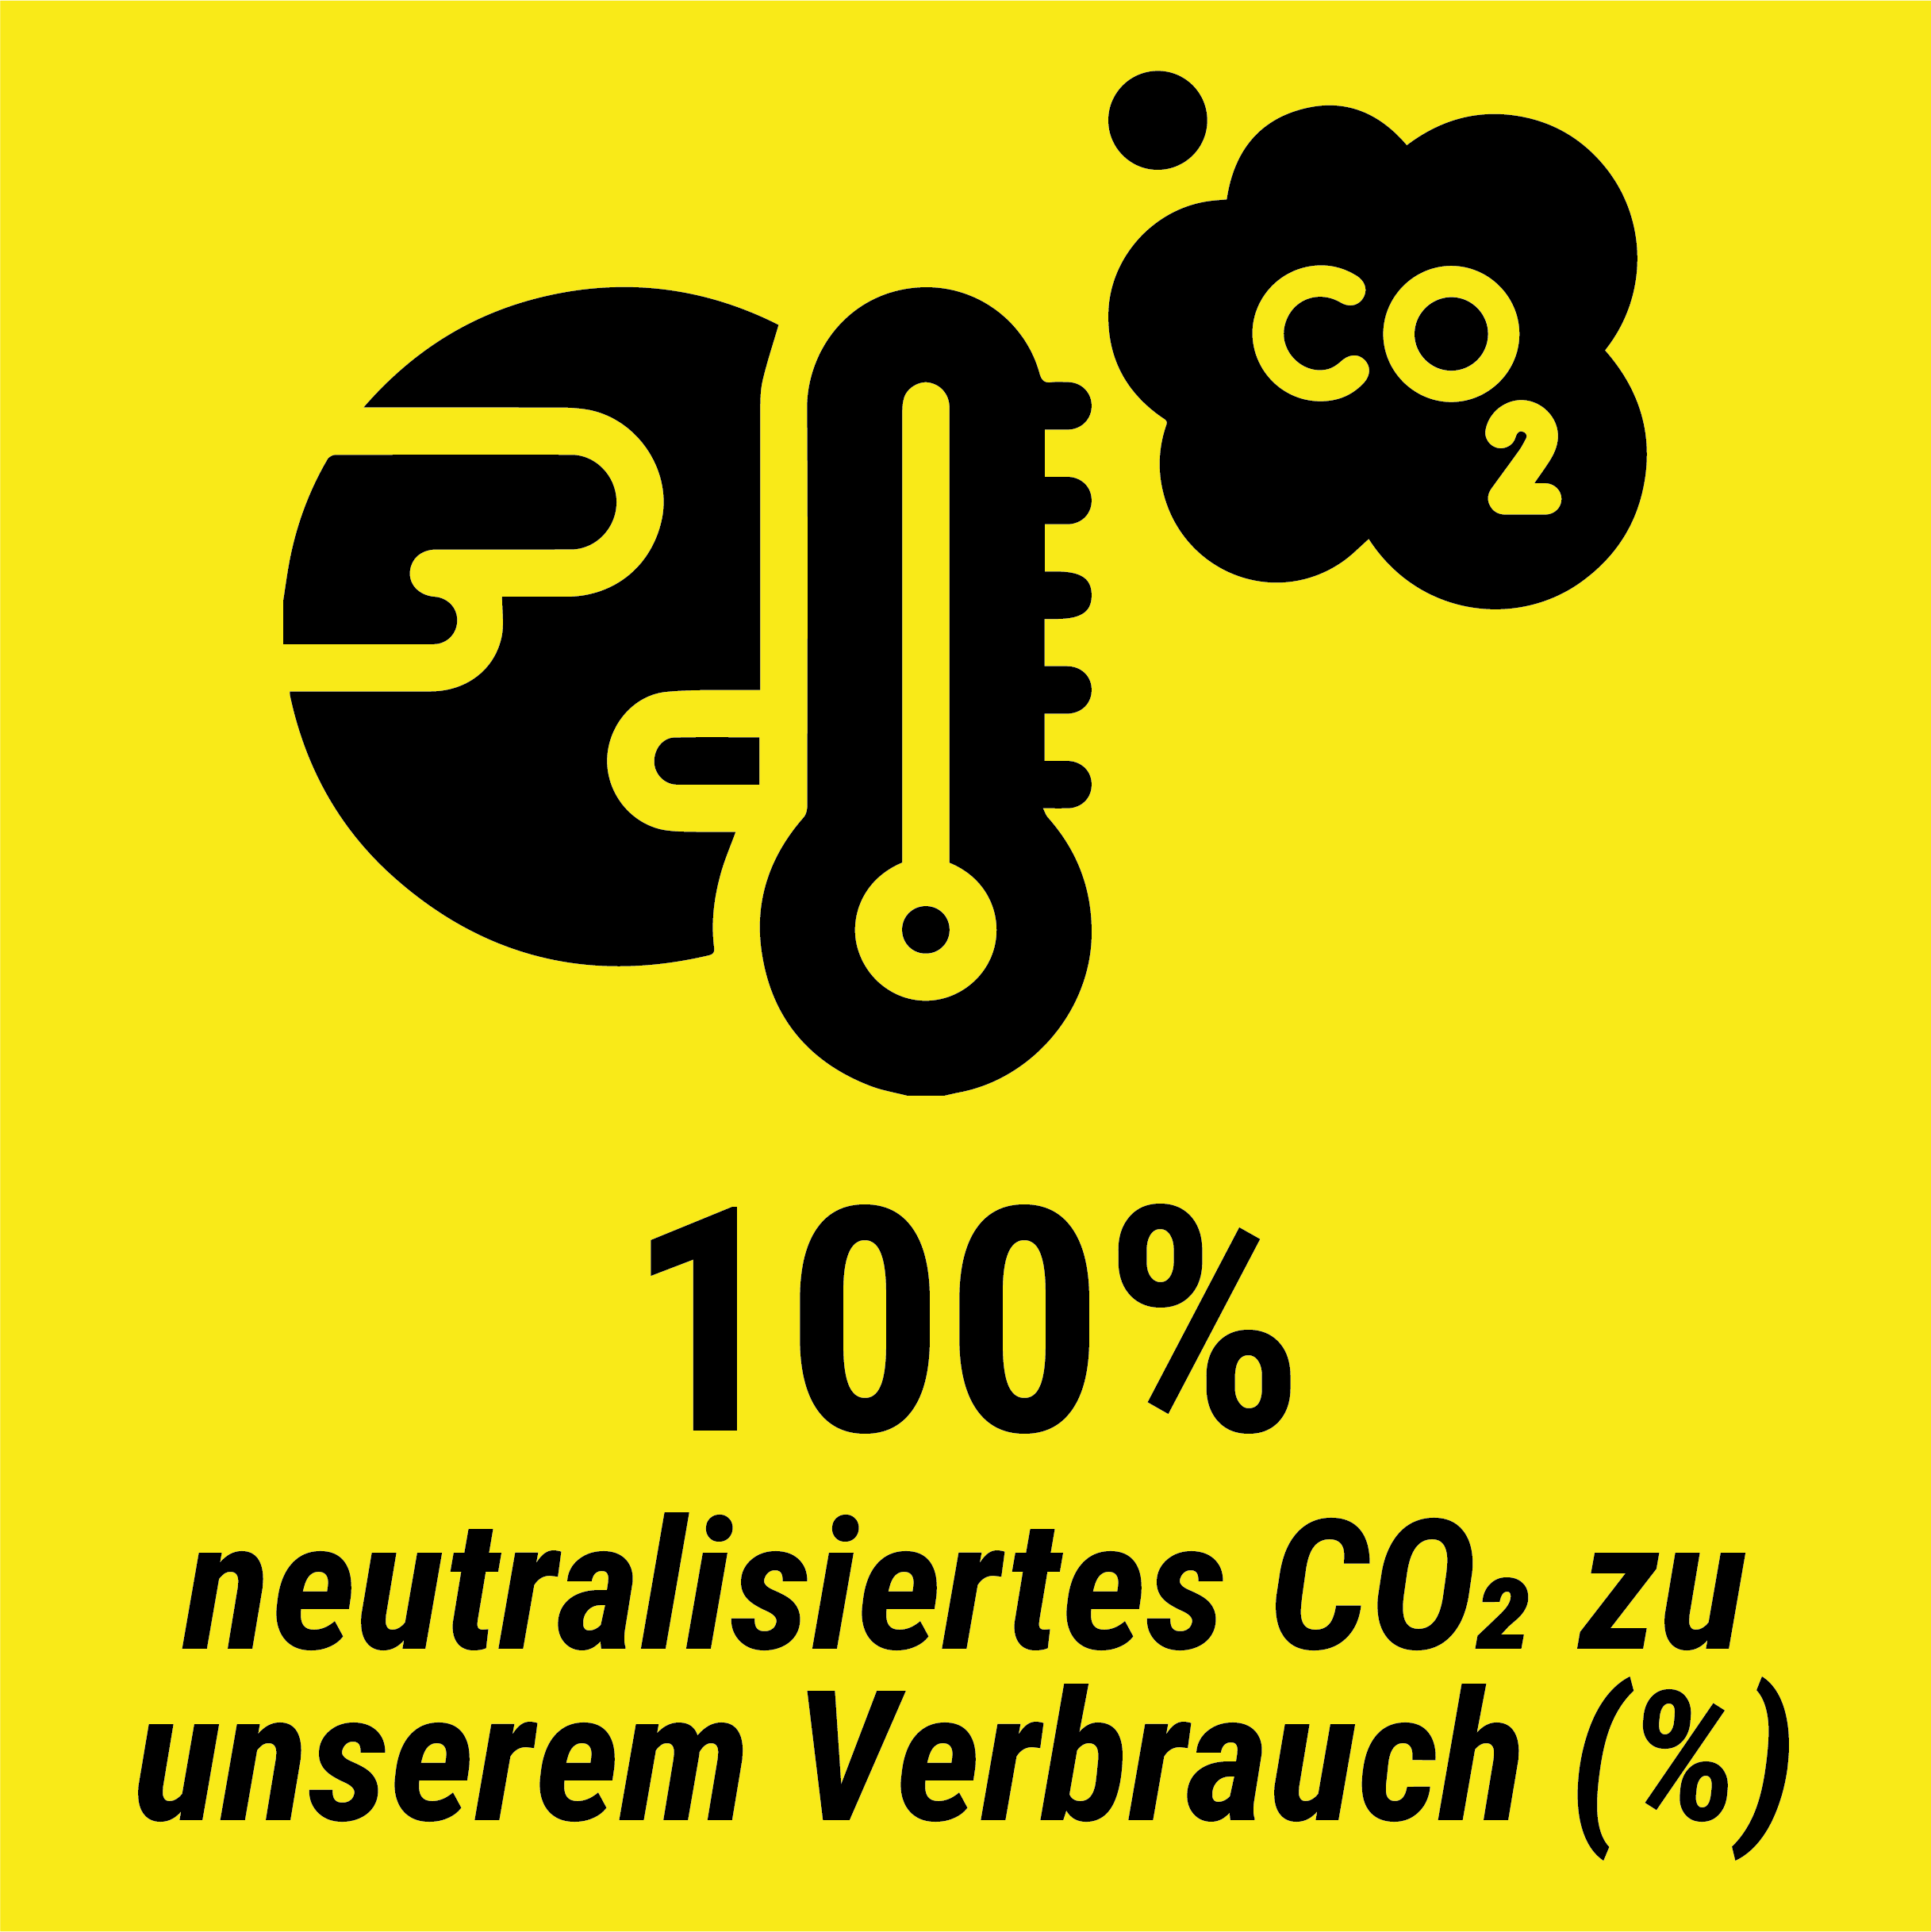 Neutralisiertes CO2 zu unserem Verbrauch: 100 %